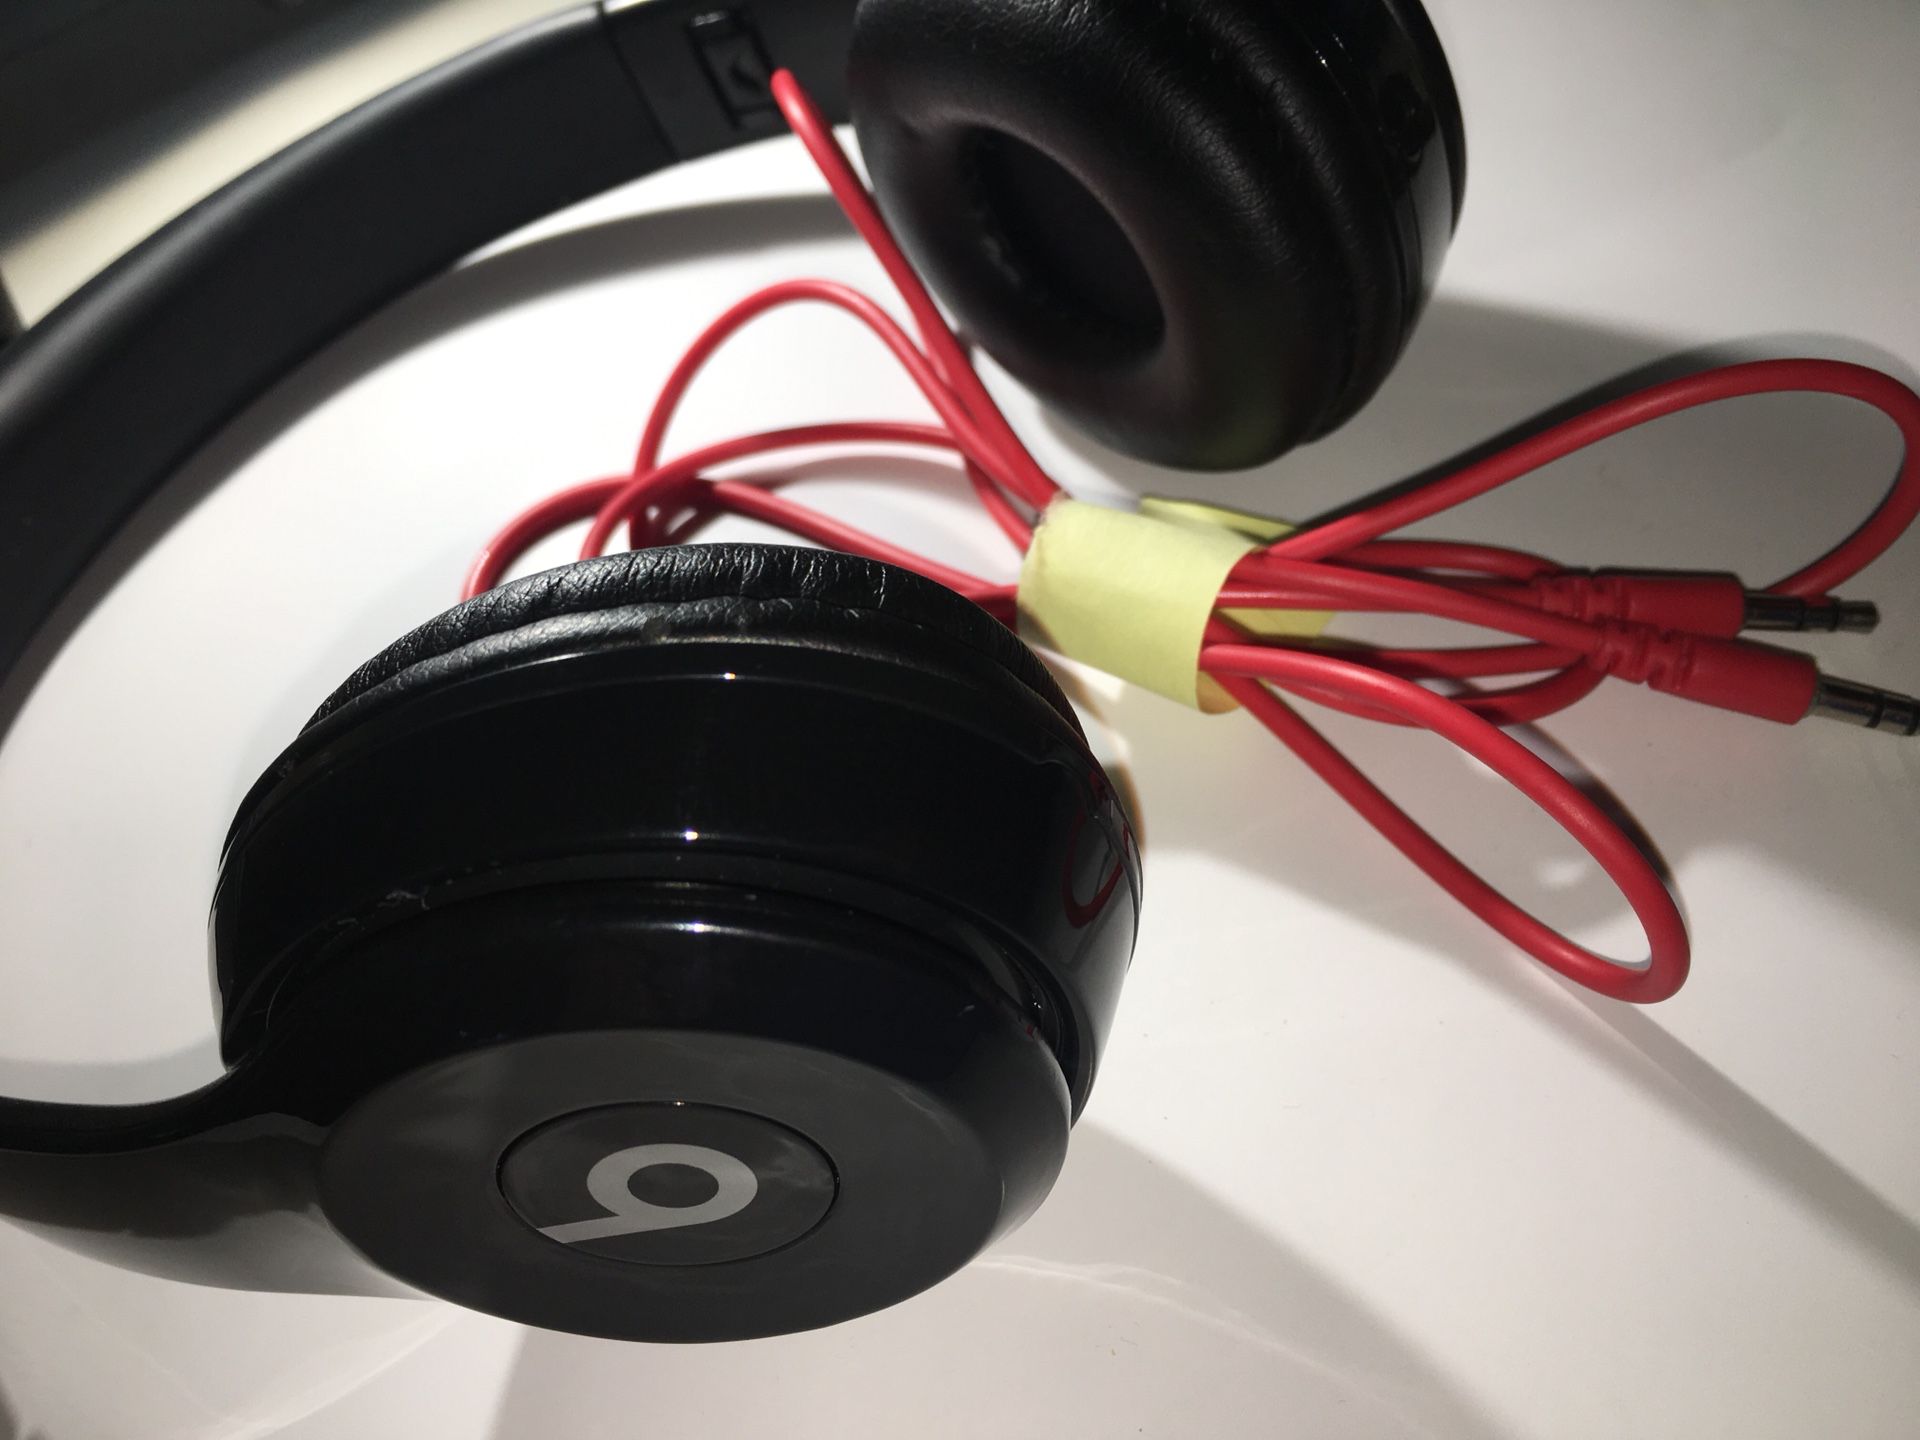 Beats studio 3 wireless headphones (BLACK)